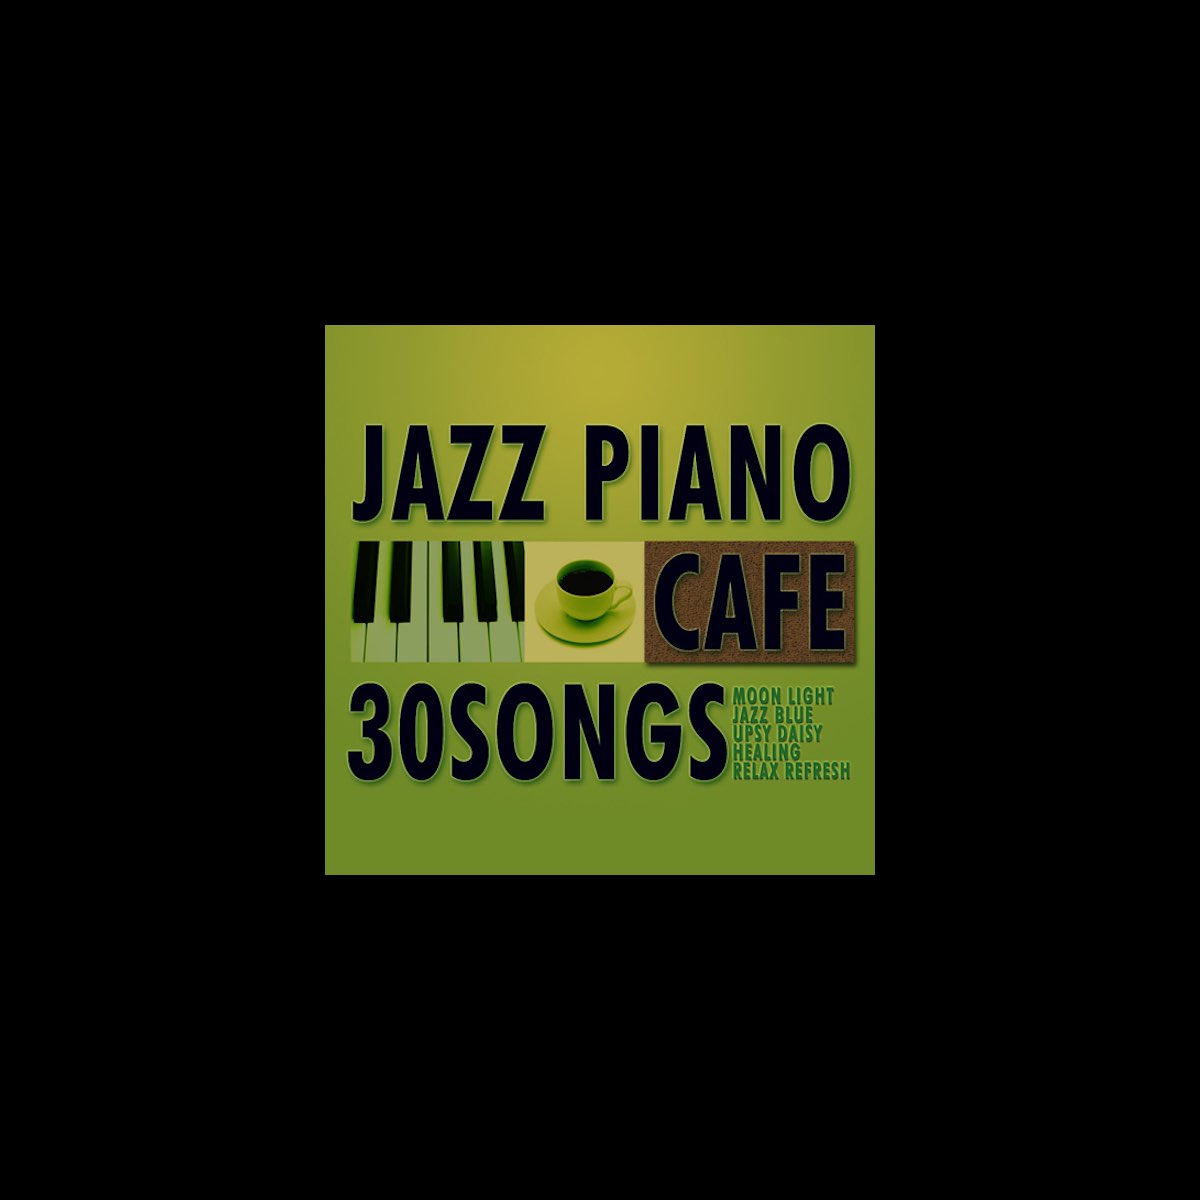 Moonlight Jazz Blueの カフェで流れるジャズピアノ30 をapple Musicで